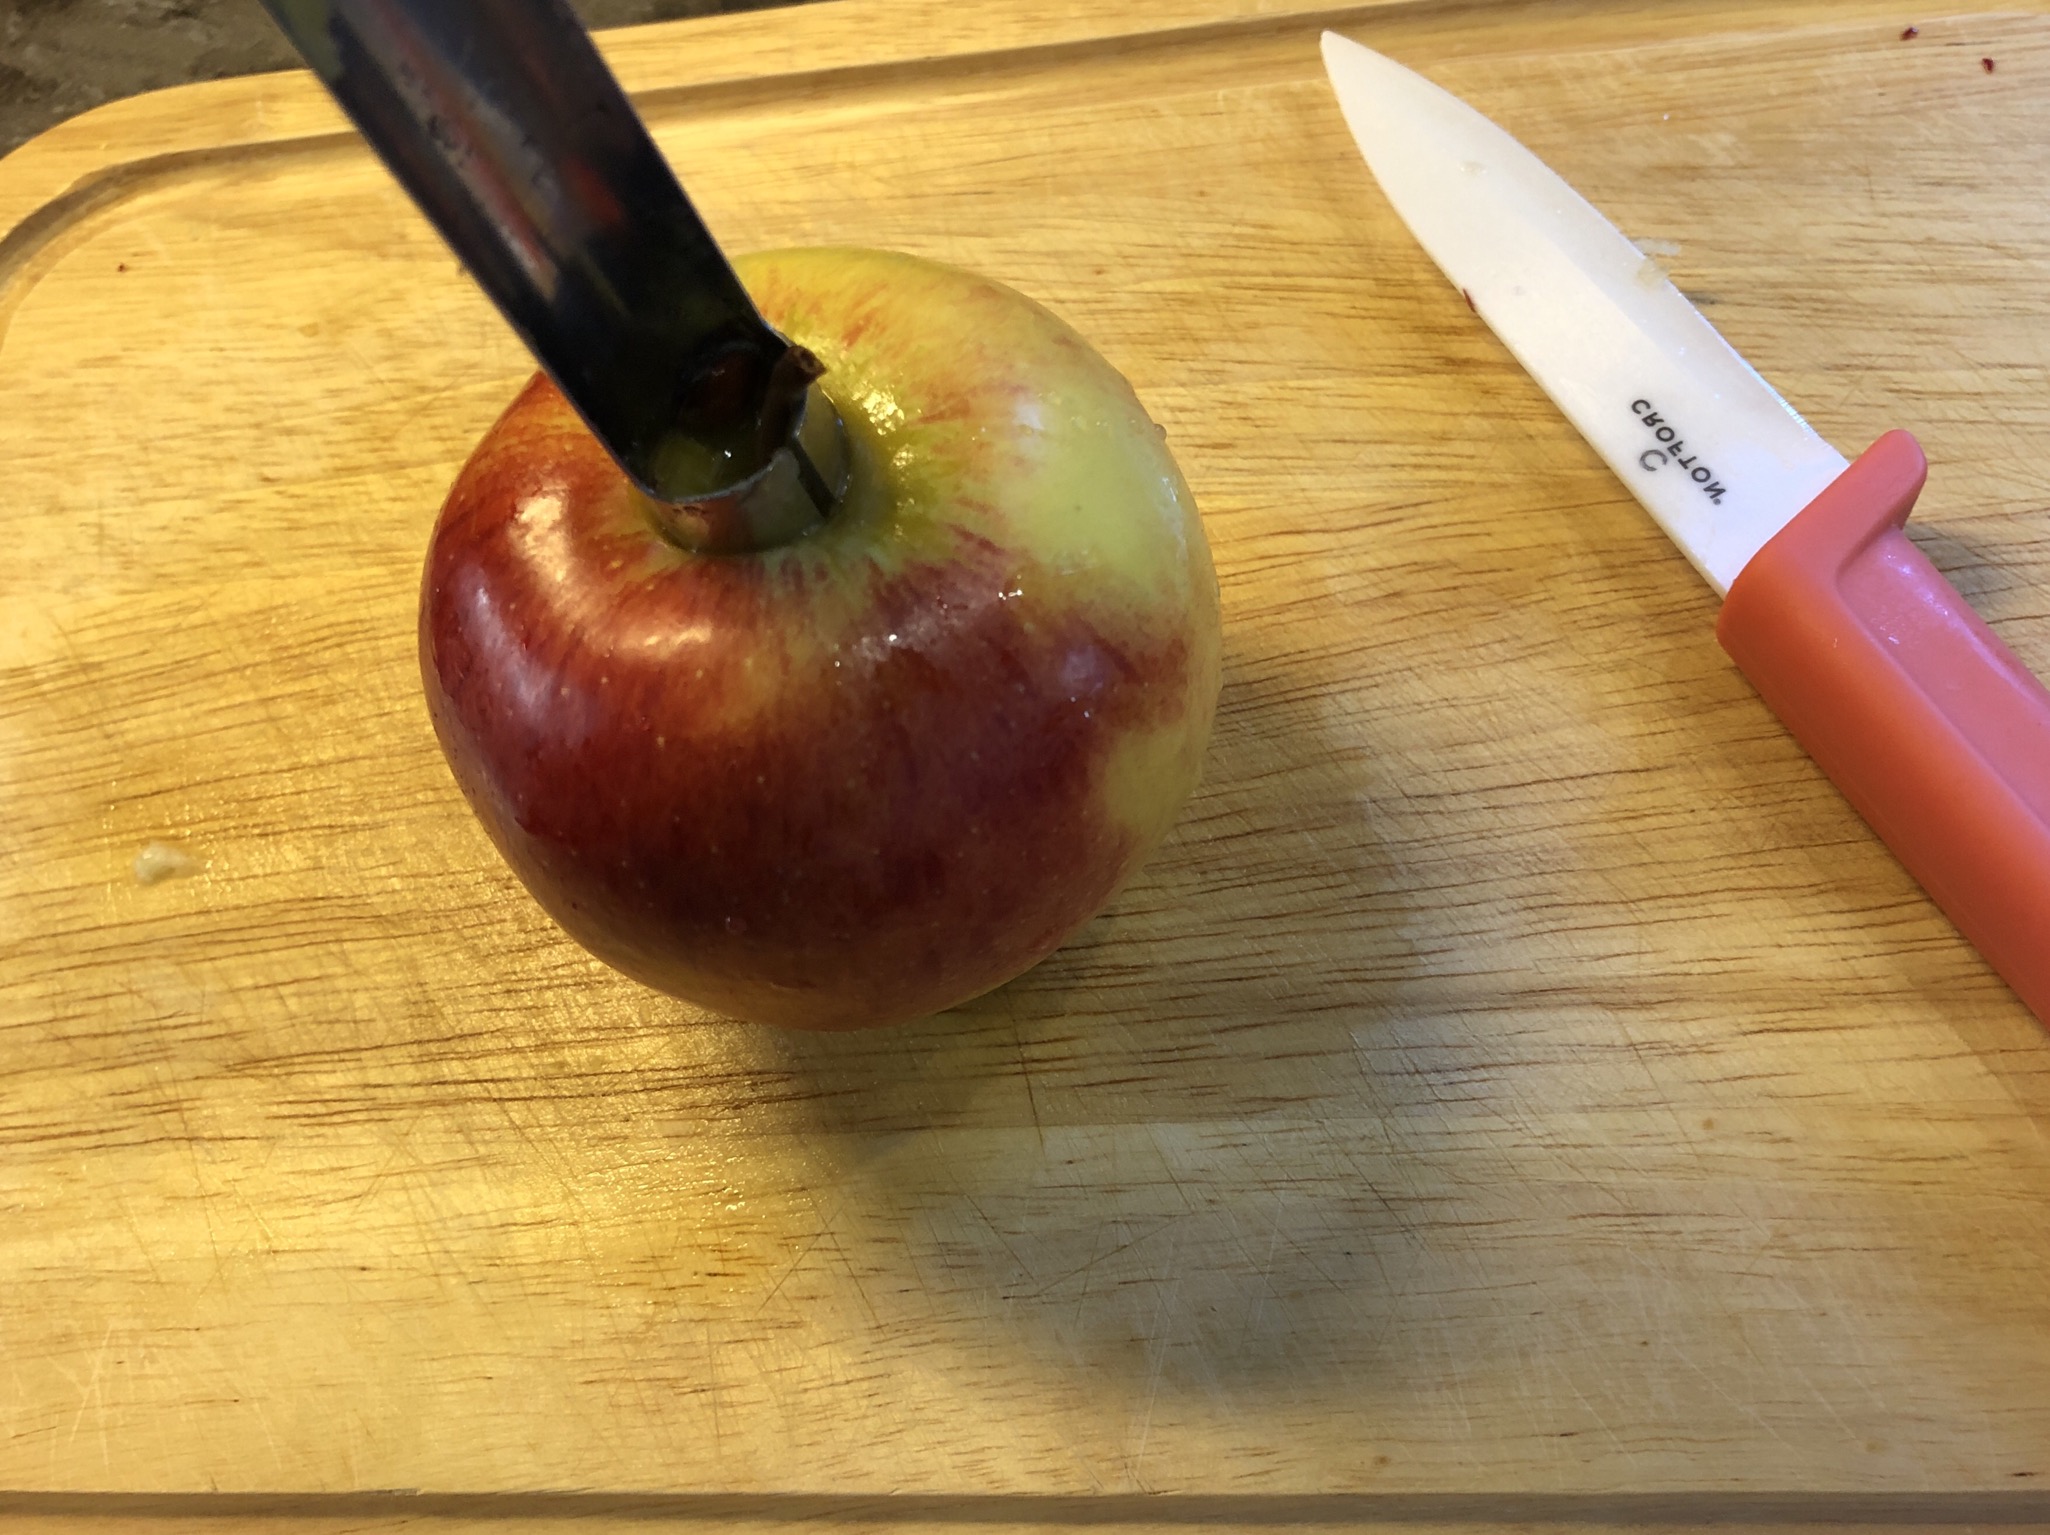 Bild zum Schritt 1 für das Bastel- und DIY-Abenteuer für Kinder: 'Apfel waschen und das Kernhaus mit dem Apfel-Entkerner entfernen.'